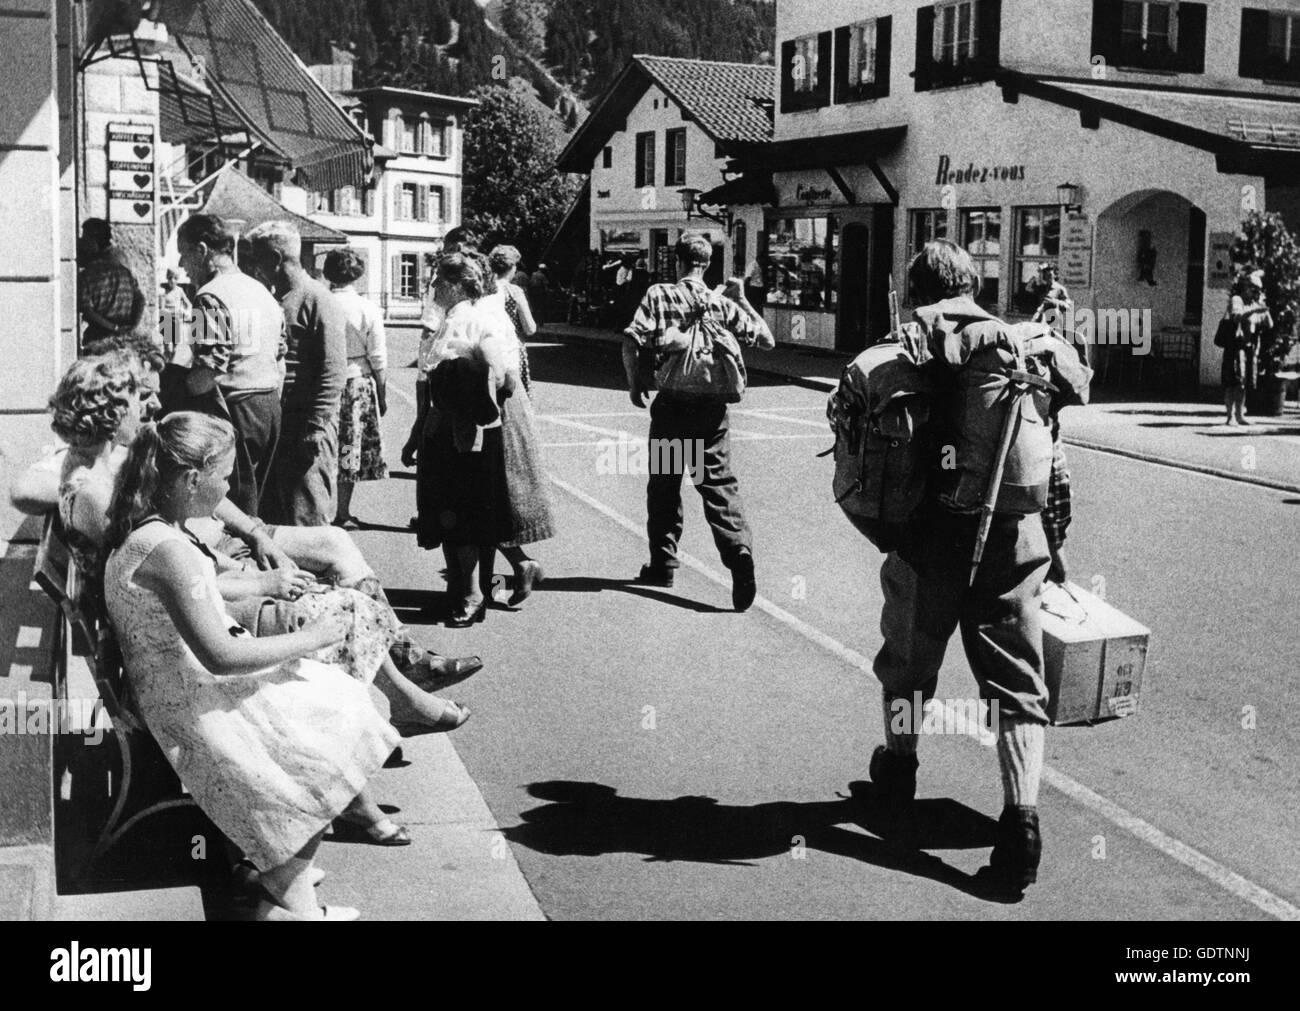 Urlauber in den 50er Jahren, Schweiz Stockfotografie - Alamy